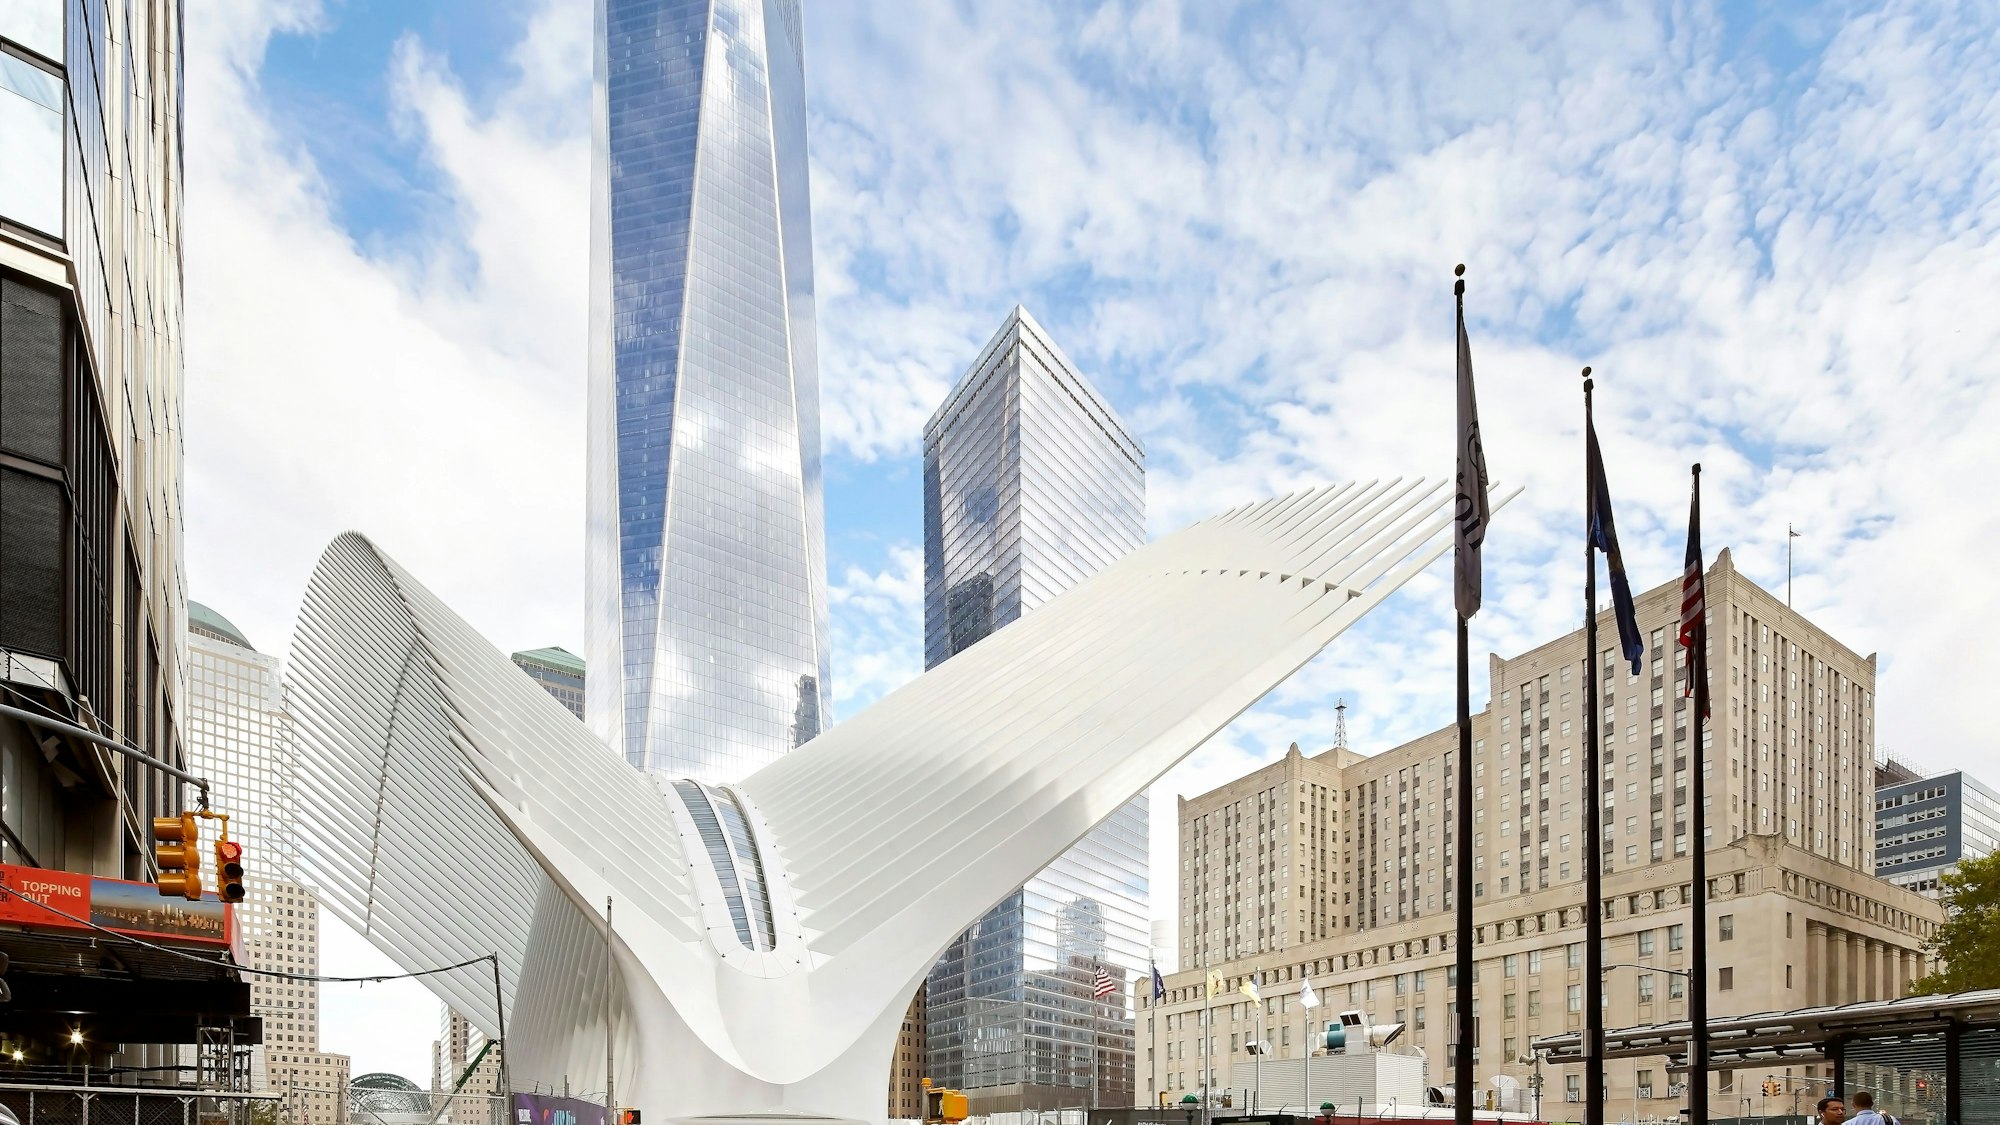 Pohl produzierte die Außenhaut der geschwungenen Halle „Oculus“, Herzstück des neuen Umsteigebahnhofs des spanischen Architekten Santiago Calatrava.